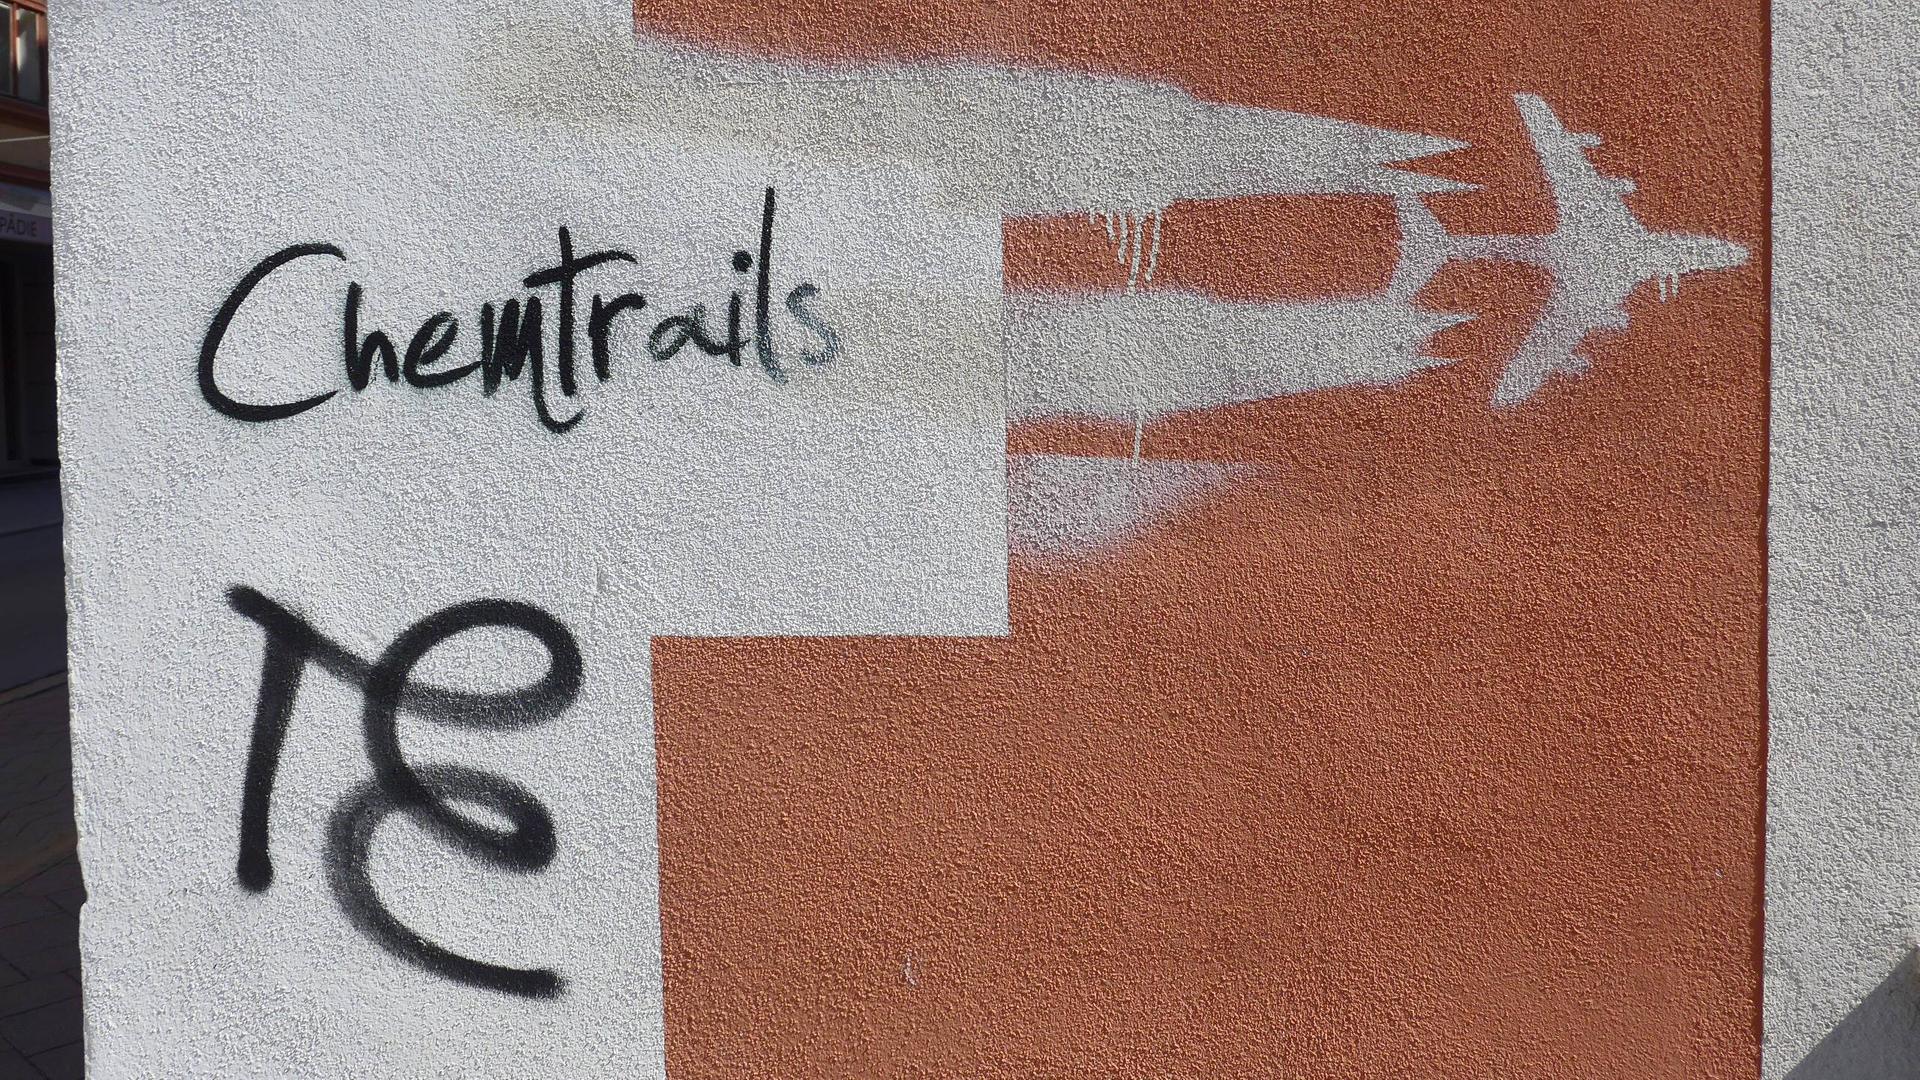 Ein Graffito an einer Hauswand zeigt ein Düsenflugzeug mit Kondensstreifen und den Schriftzug Chemtrails.